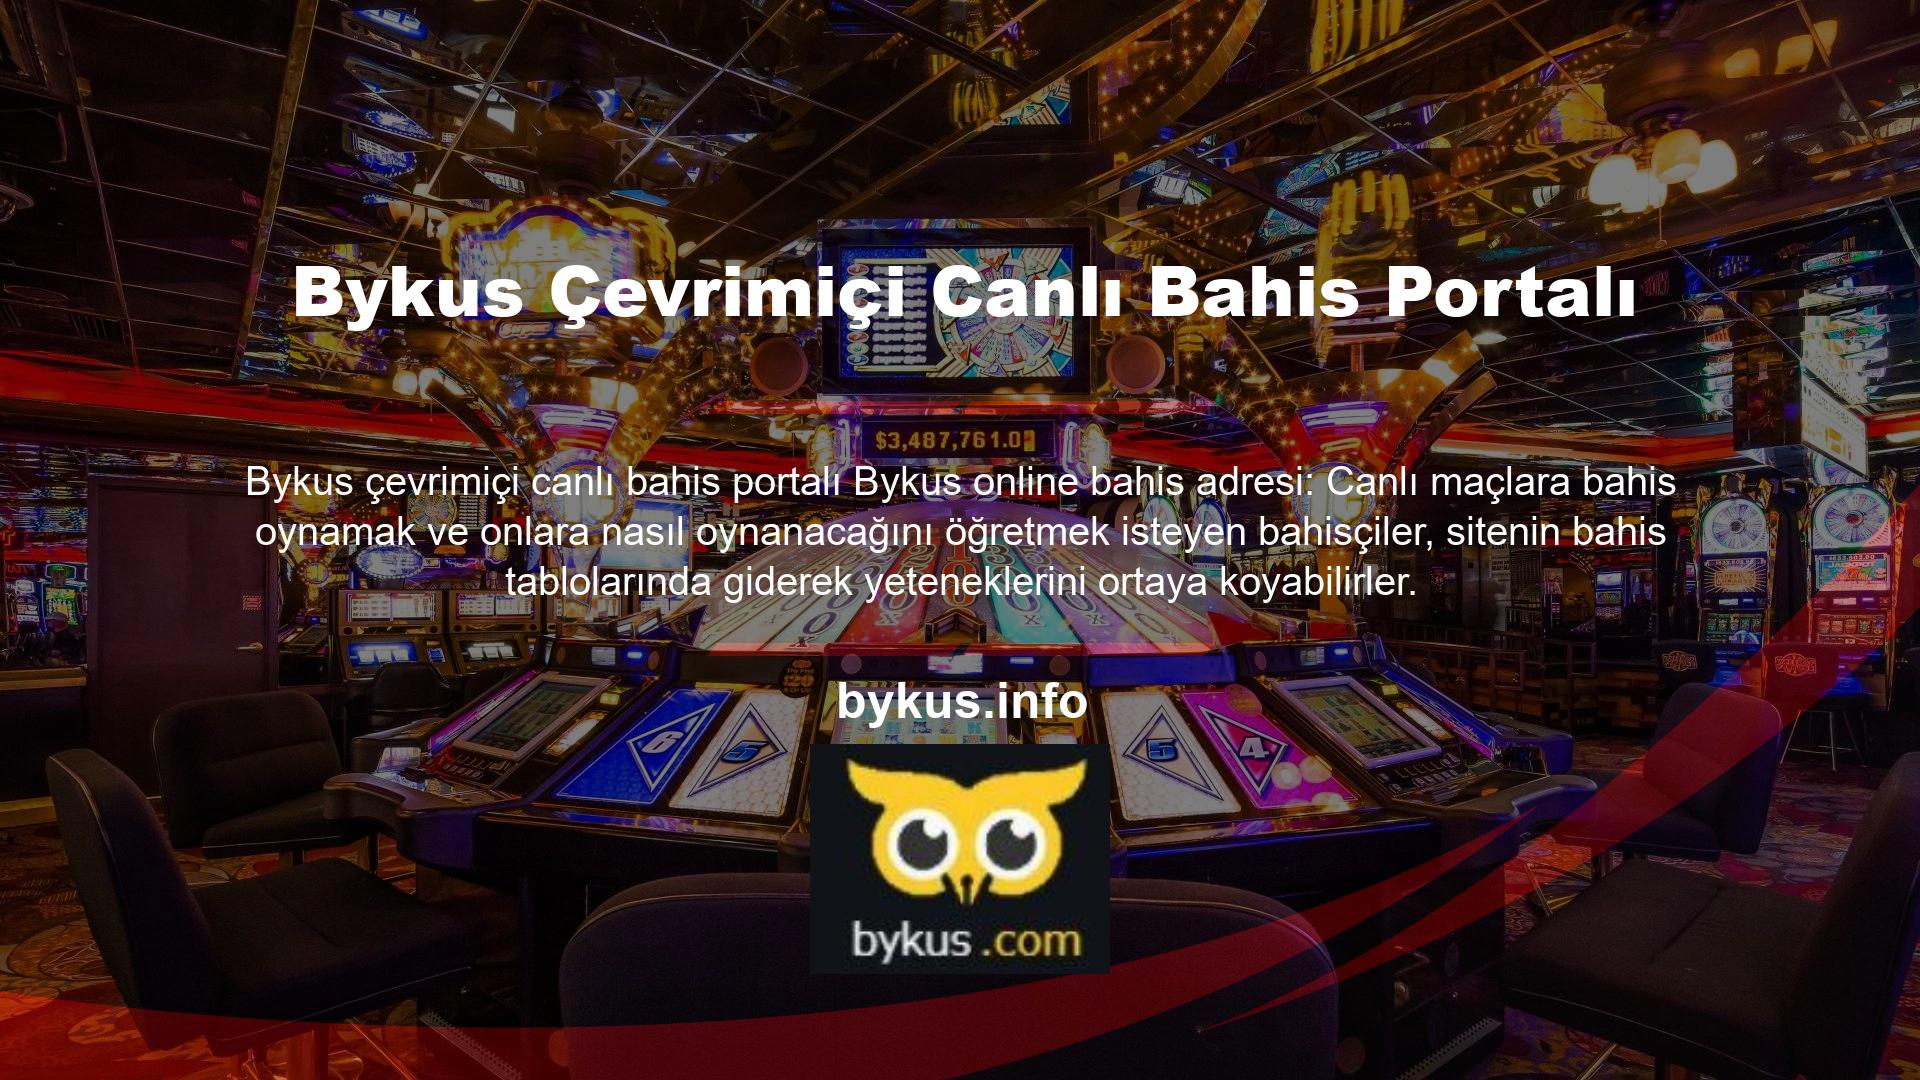 Bu talimatı izleyerek bugün Bykus yasa dışı casino sitesinde canlı bahis izleyin:

	Öncelikle Bykus online casino web sitesine gidin ve ardından ana sayfasındaki 'Üyeler' seçeneğine tıklayın